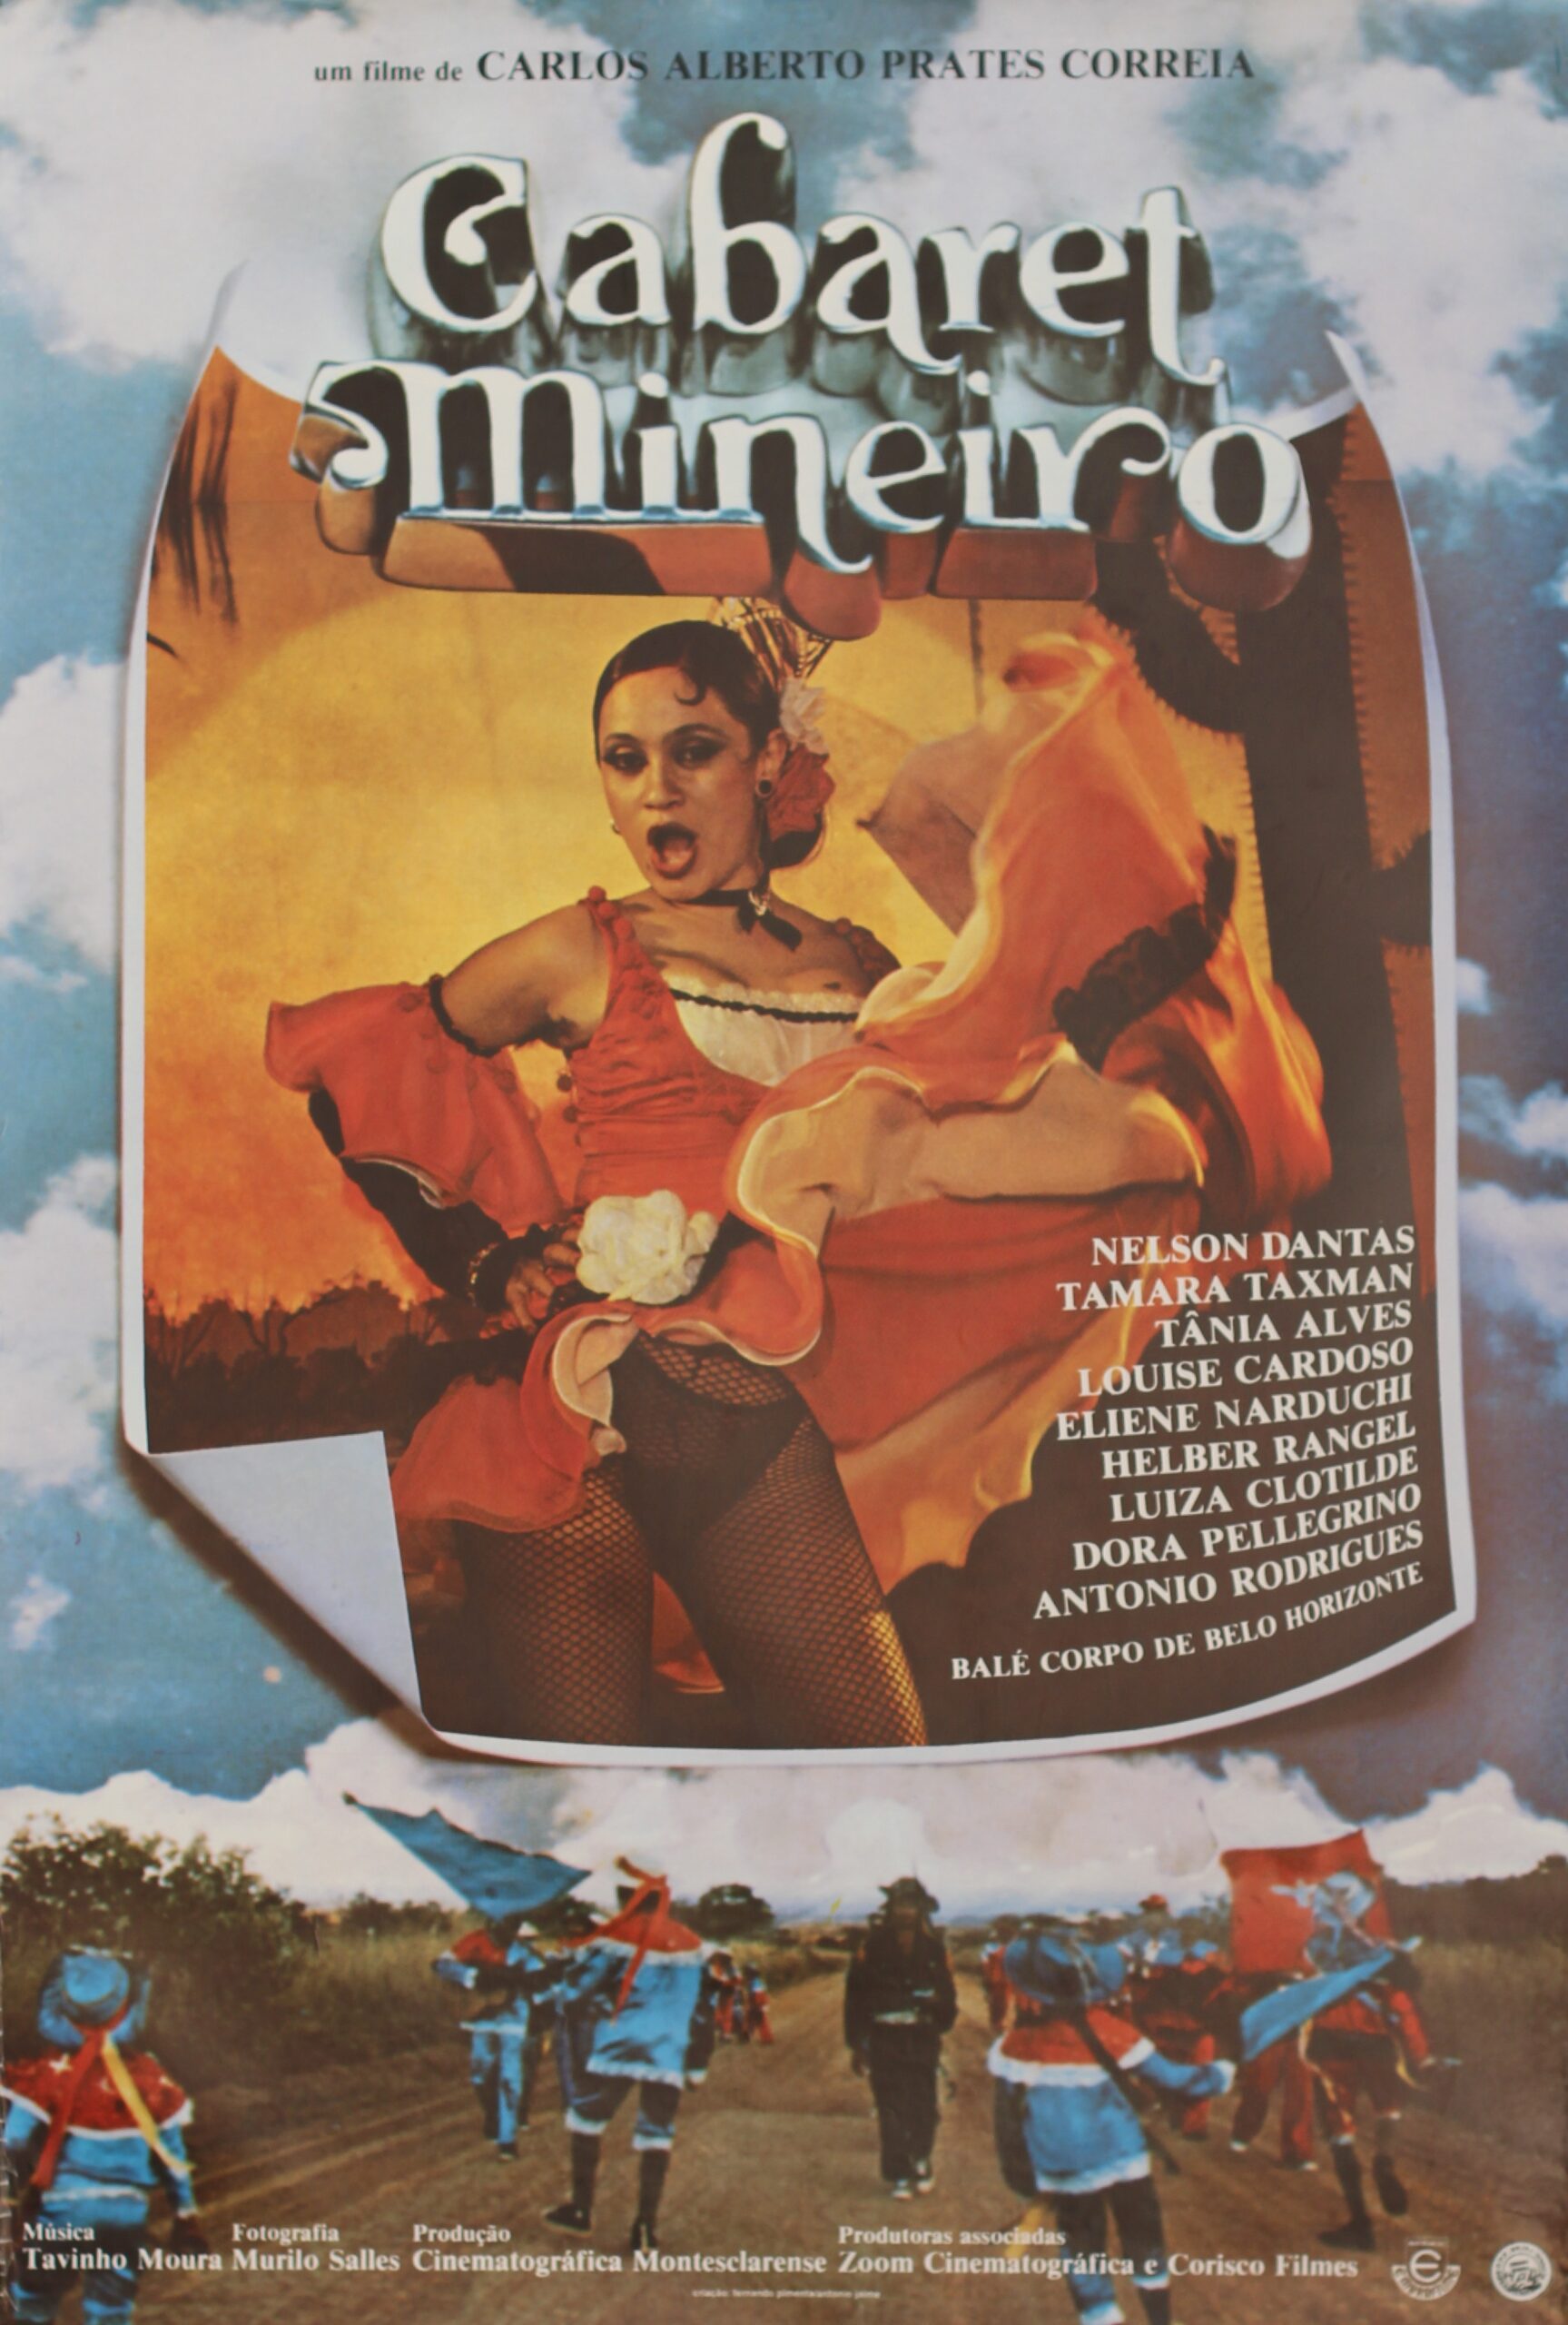 Cabaret mineiro (1984)